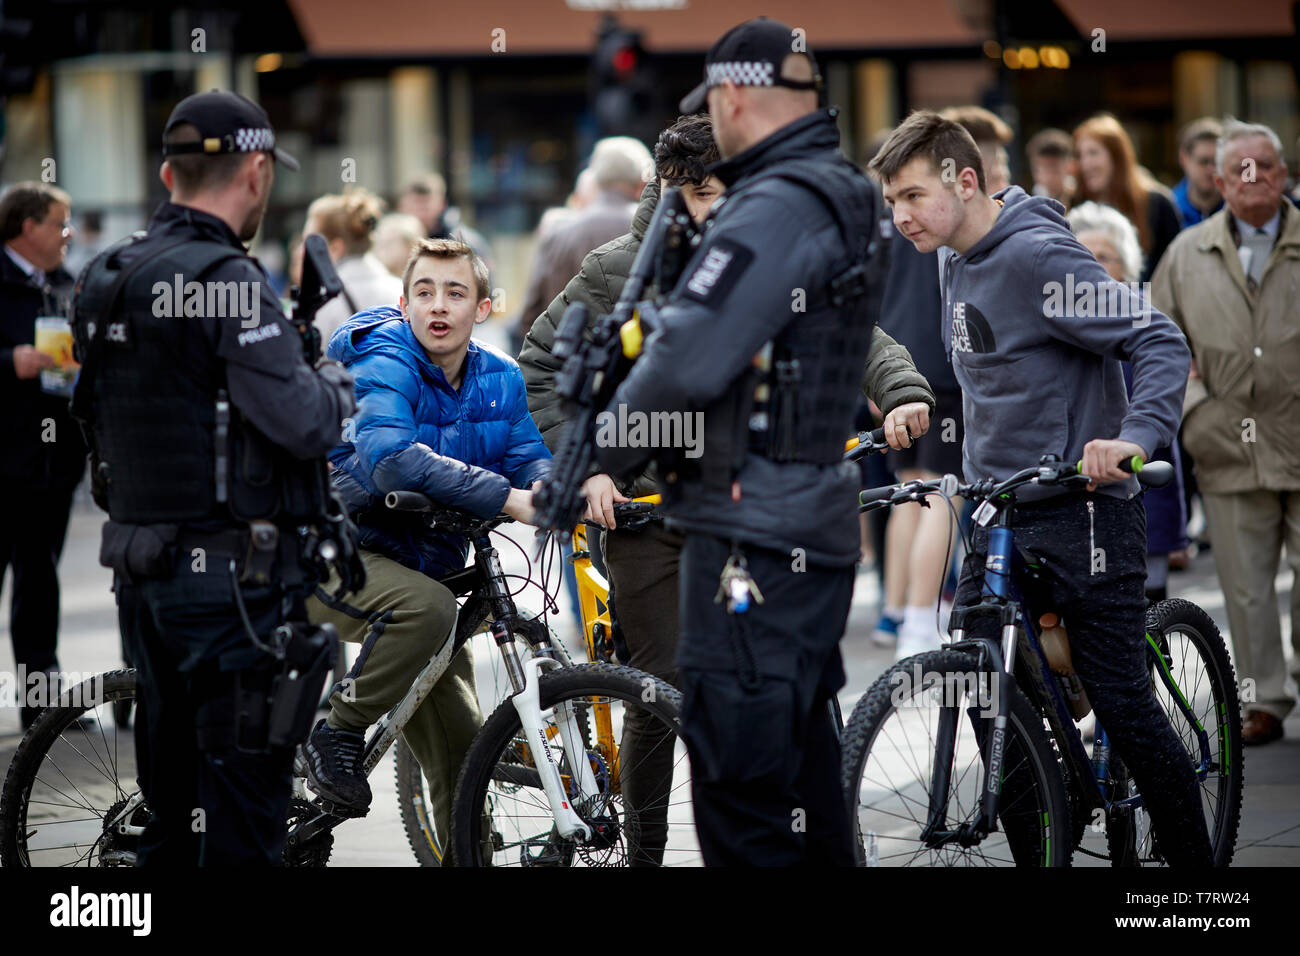 Newcastle upon Tyne, polizia armata sul centro della città a chiacchierare con i ragazzi sul biles Foto Stock